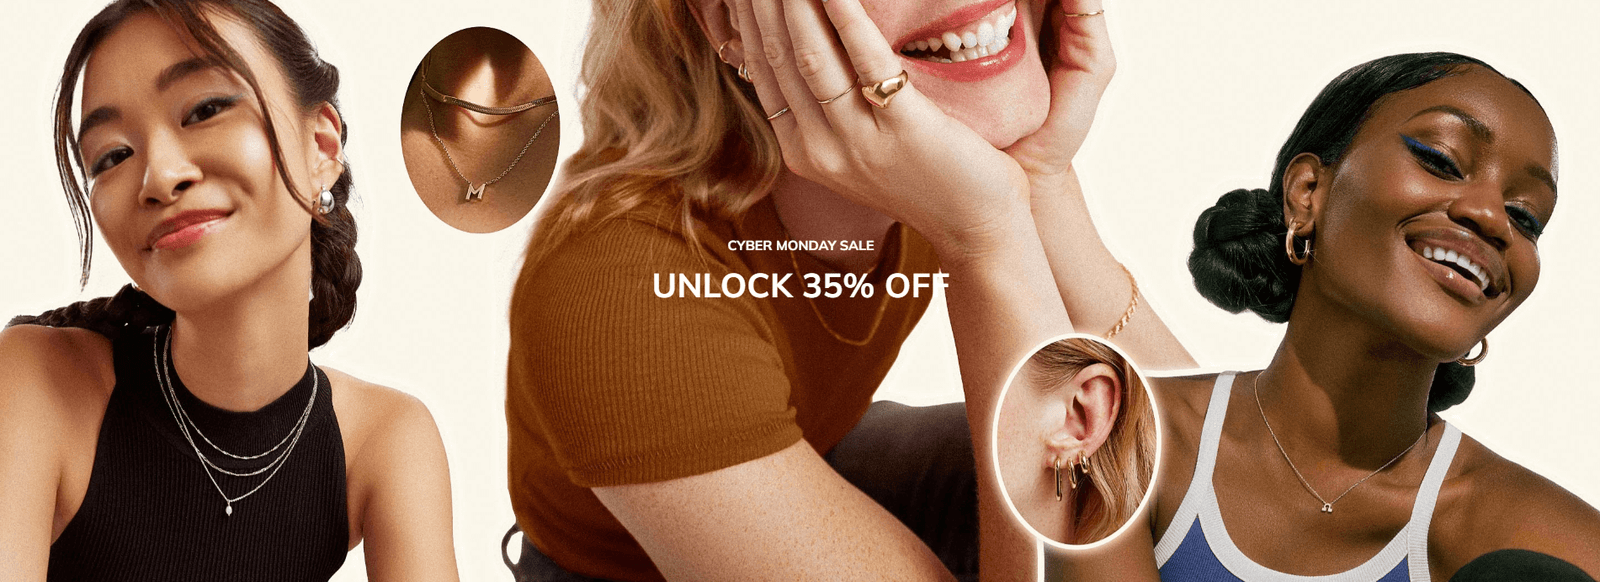 Ana Luisa: Unlock 35% Off